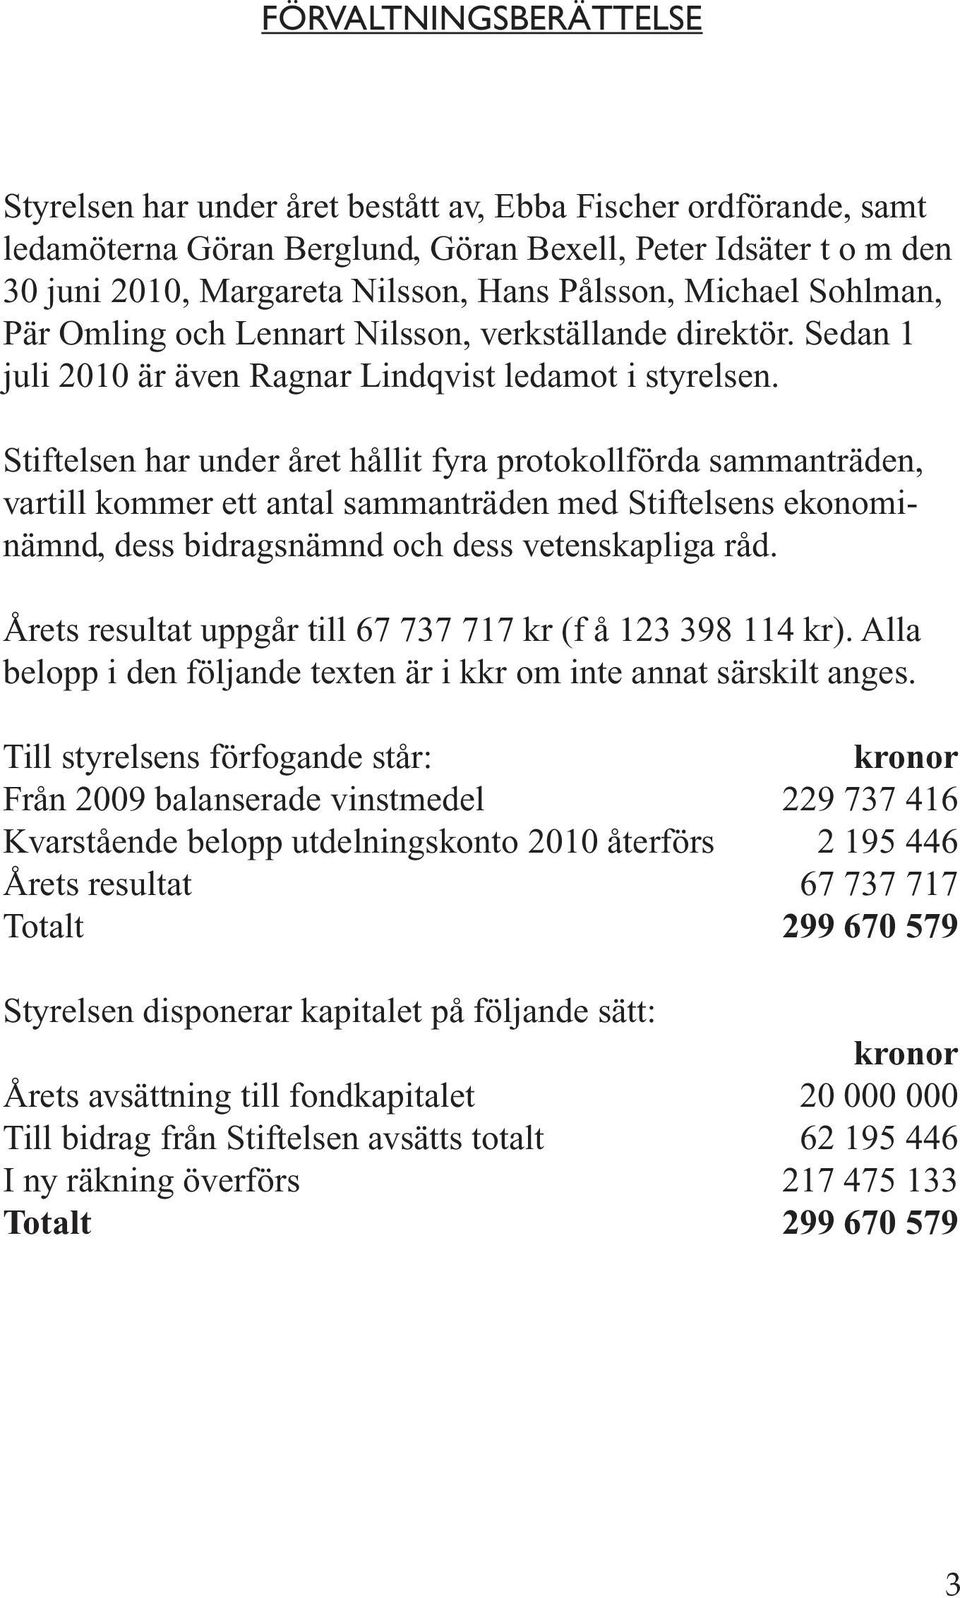 Crafoordska stiftelsen Årsredovisning PDF Gratis nedladdning